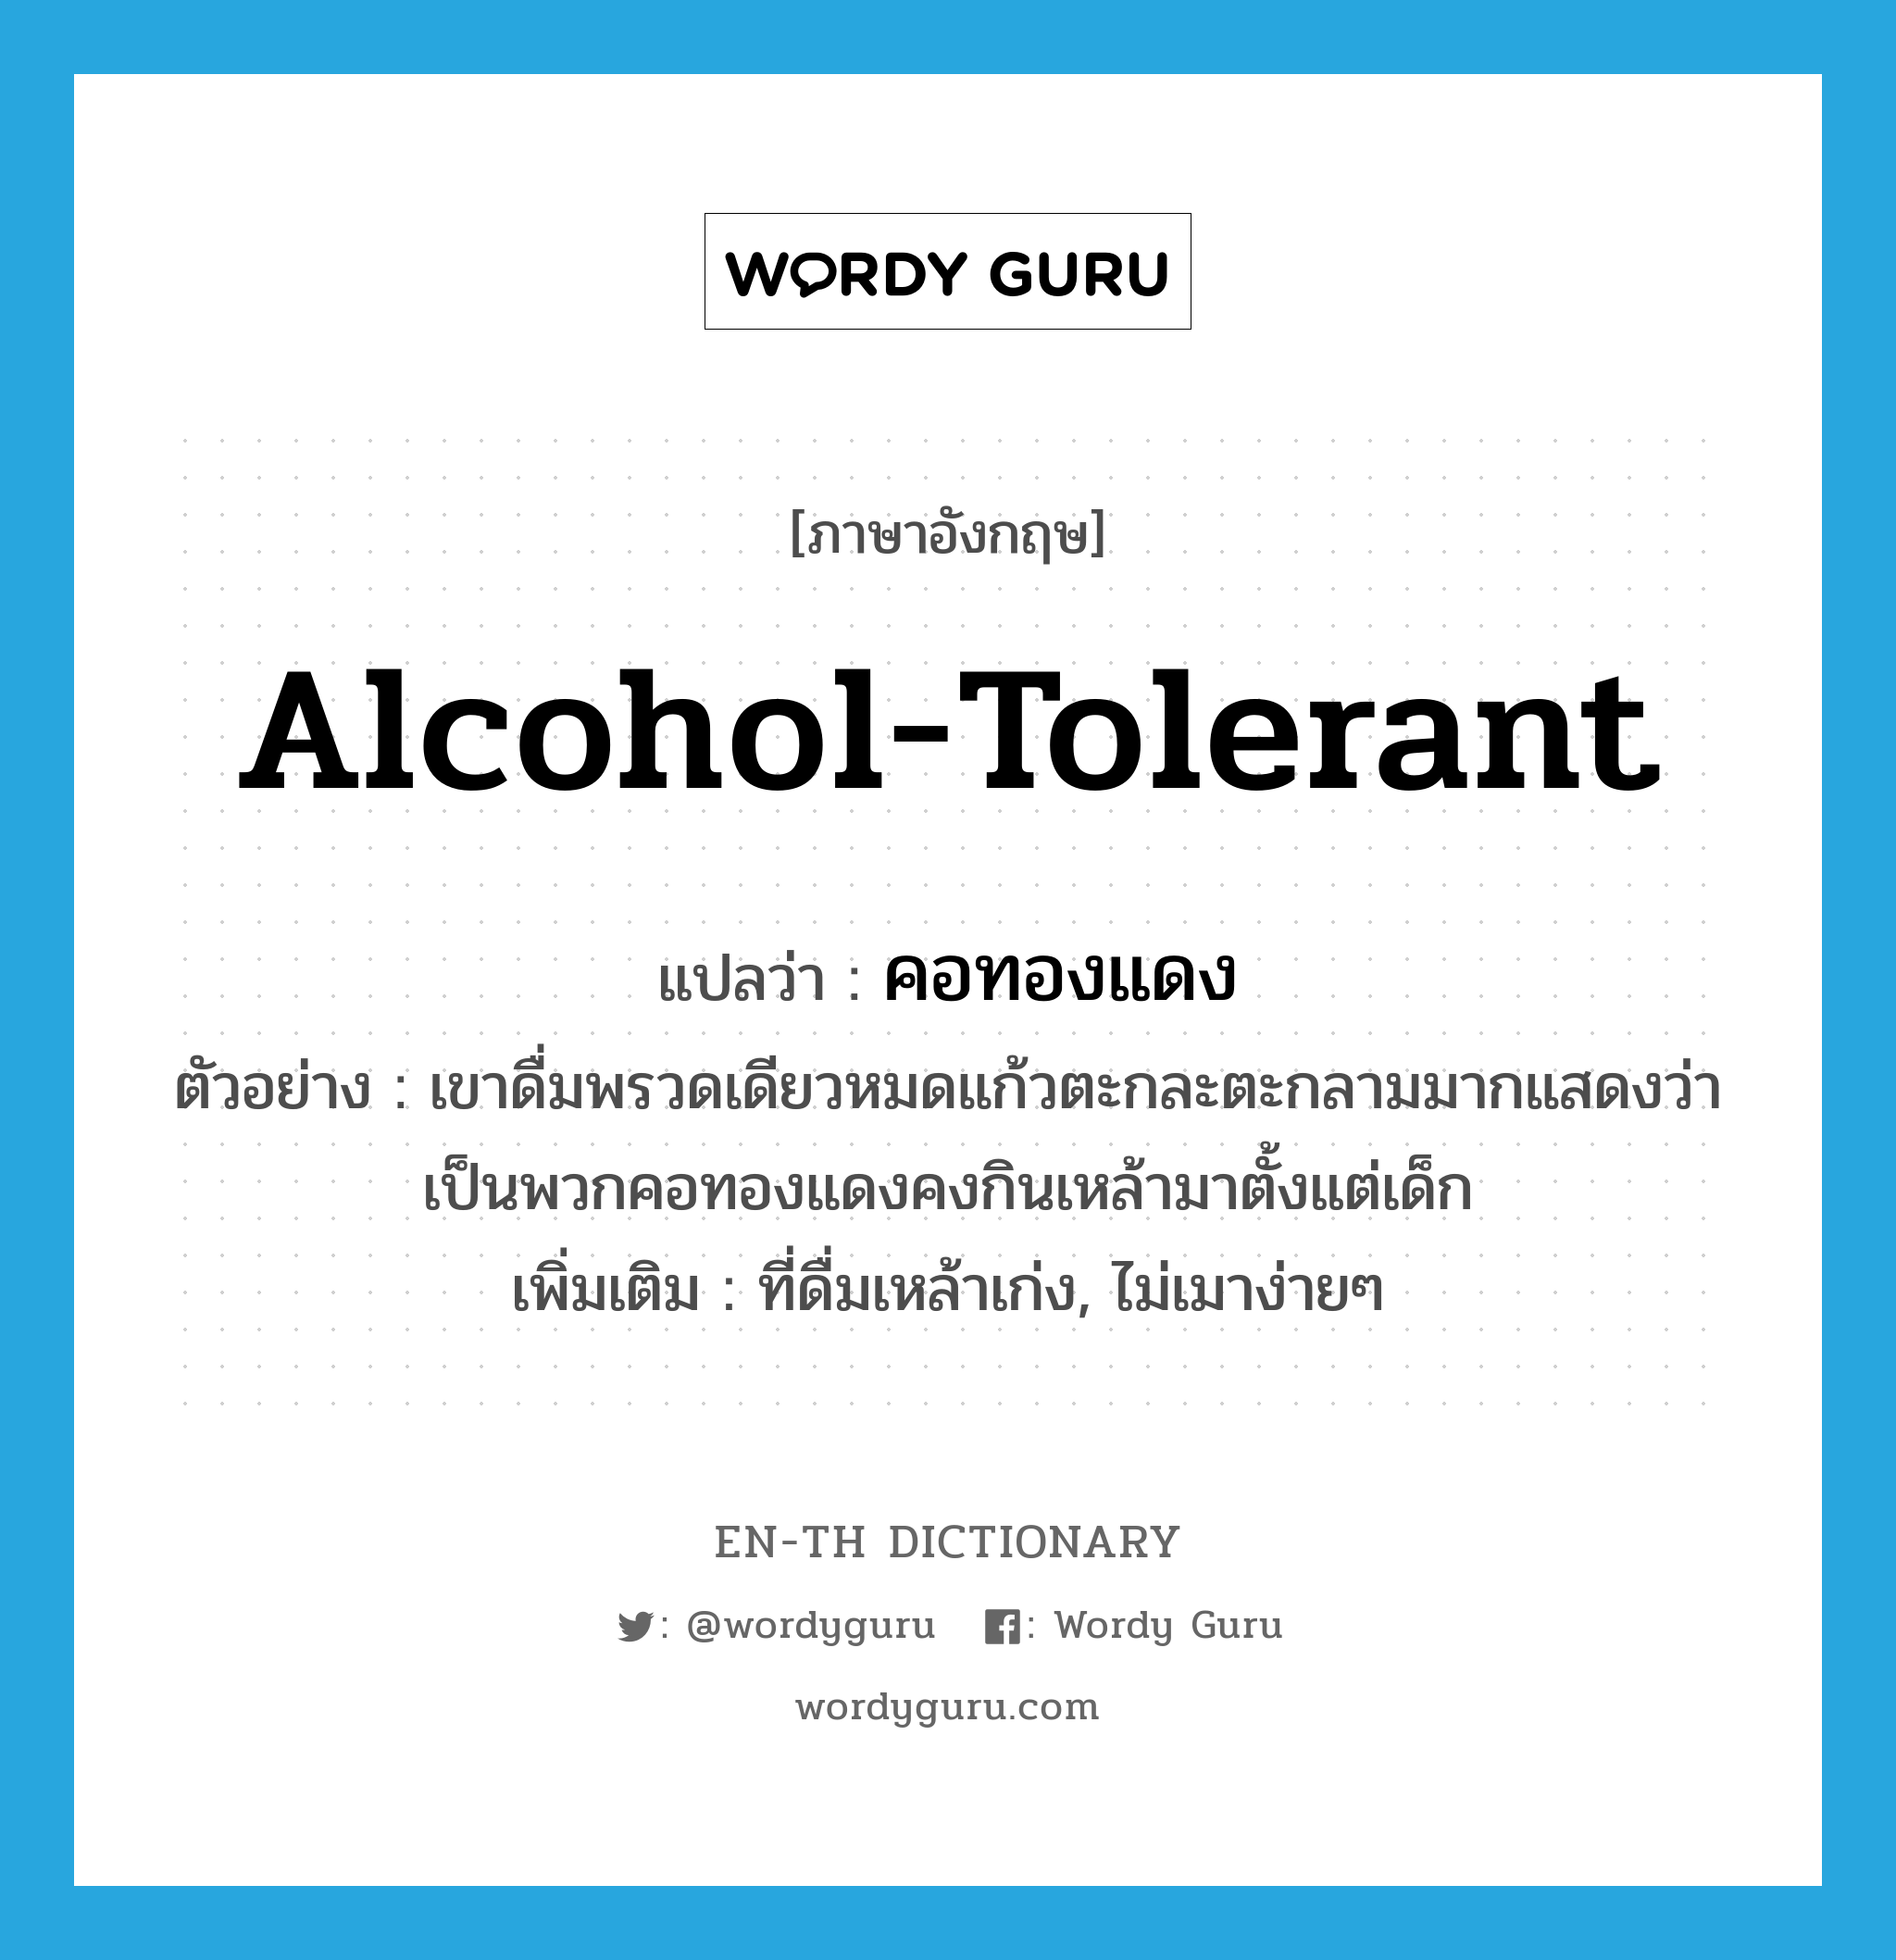 alcohol-tolerant แปลว่า?, คำศัพท์ภาษาอังกฤษ alcohol-tolerant แปลว่า คอทองแดง ประเภท ADJ ตัวอย่าง เขาดื่มพรวดเดียวหมดแก้วตะกละตะกลามมากแสดงว่าเป็นพวกคอทองแดงคงกินเหล้ามาตั้งแต่เด็ก เพิ่มเติม ที่ดื่มเหล้าเก่ง, ไม่เมาง่ายๆ หมวด ADJ